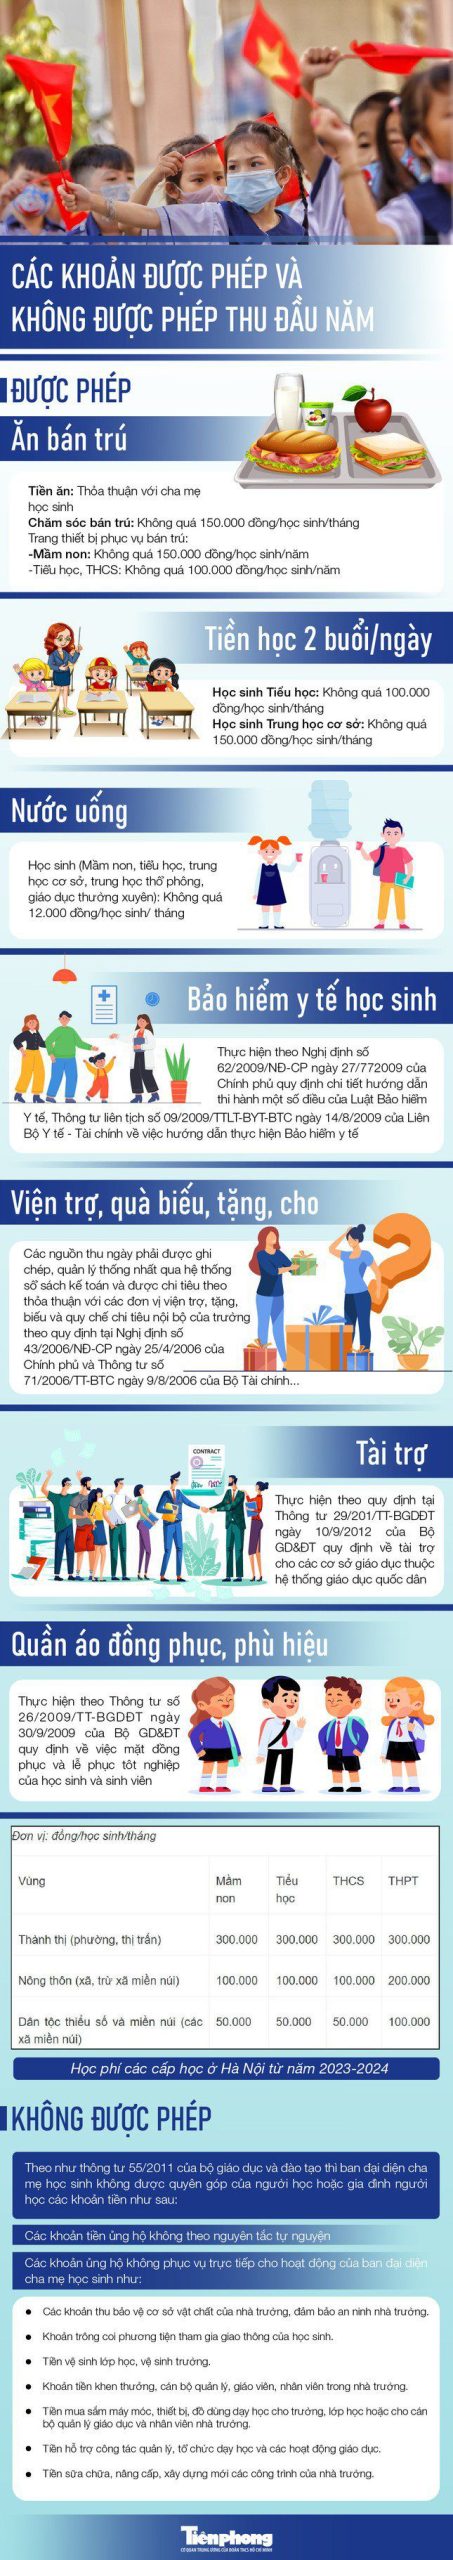 Trường học ở Hà Nội được phép thu những khoản nào